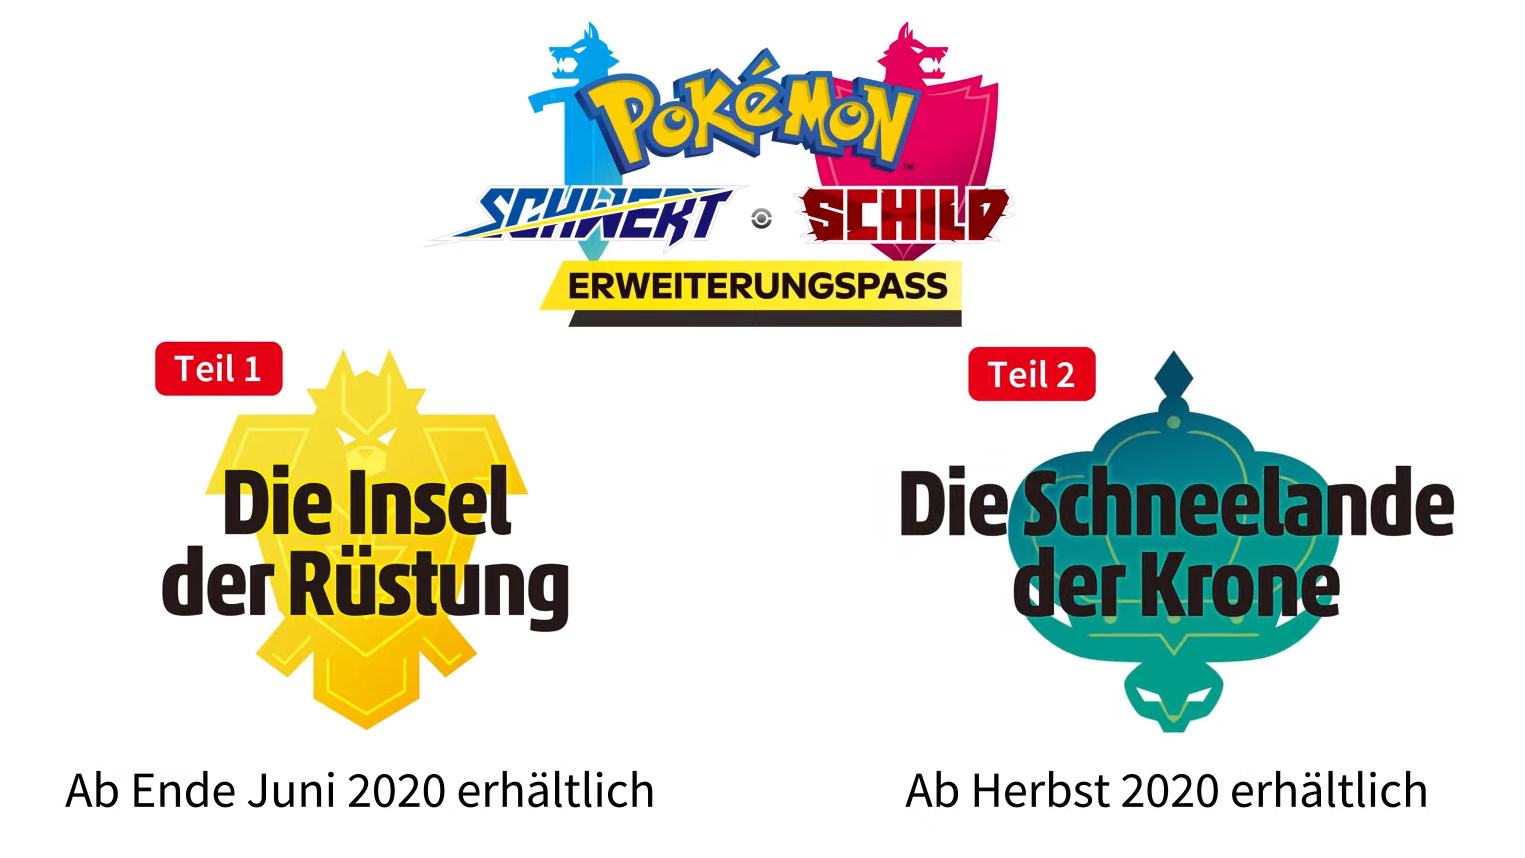 Pokémon Schwert & Schild erhält Erweiterungen 2020 zwei - News